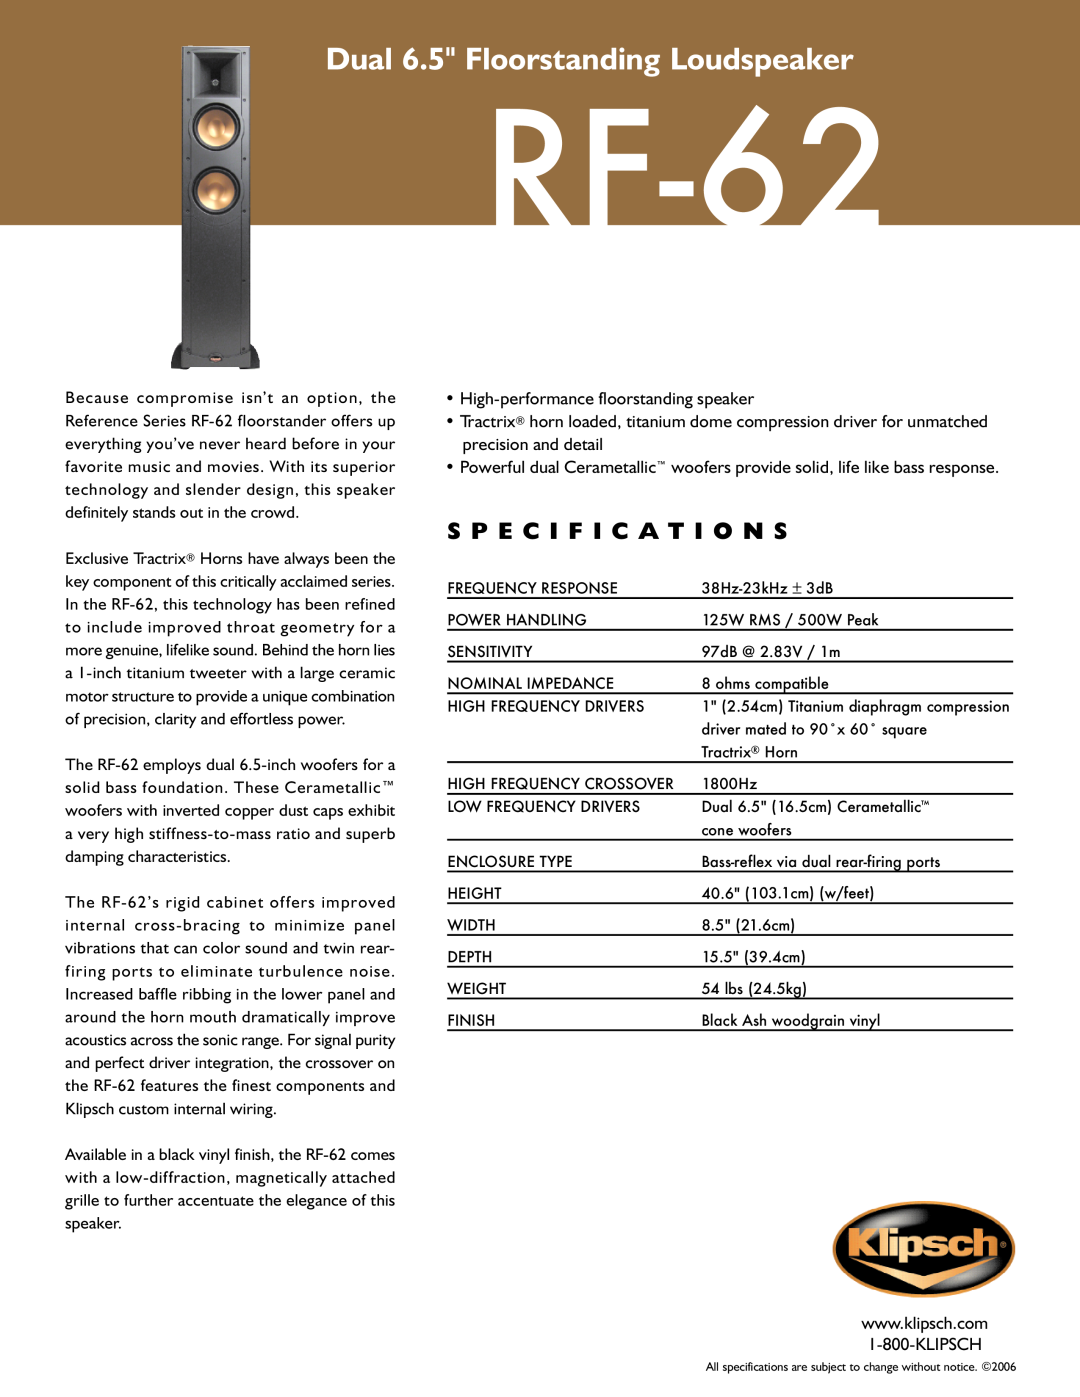 Klipsch RF-62 specifications Dual 6.5 Floorstanding Loudspeaker, S P E C I F I C A T I O N S 